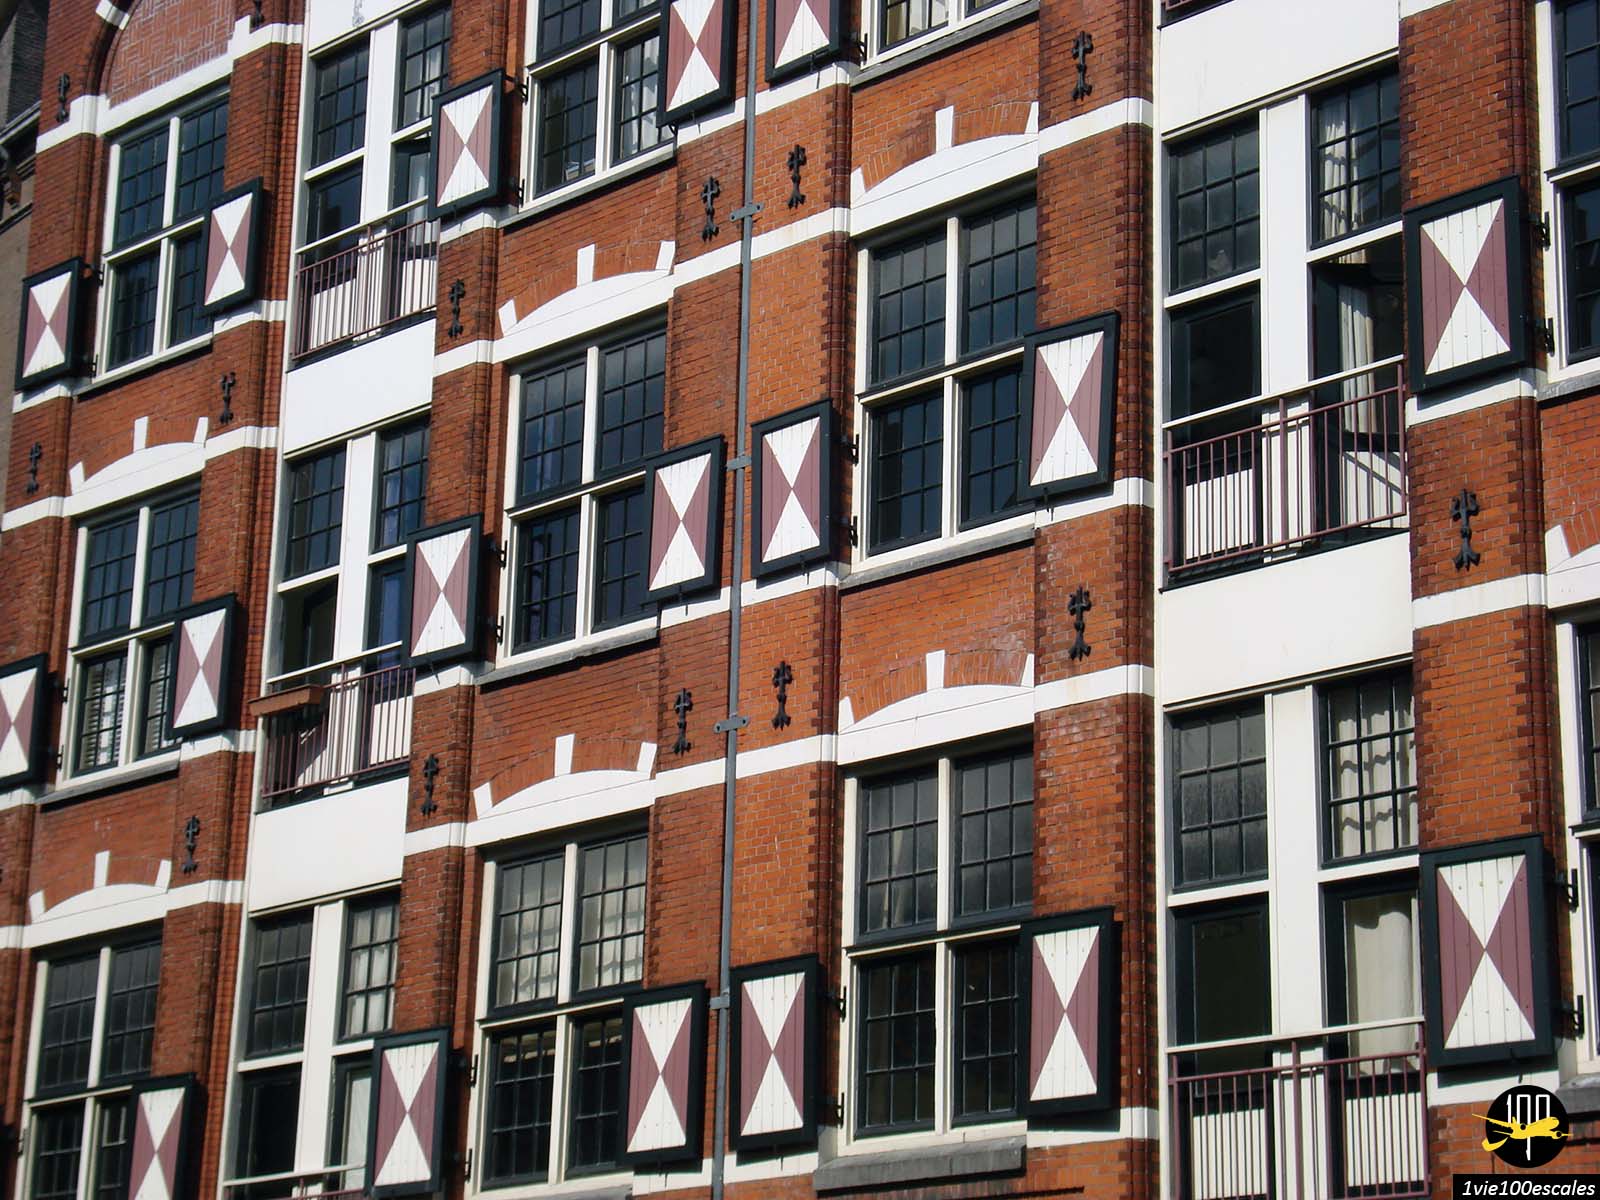 Les façades en briques le long du canal Oudezijds Kolk dans le quartier de De Wallen à Amsterdam